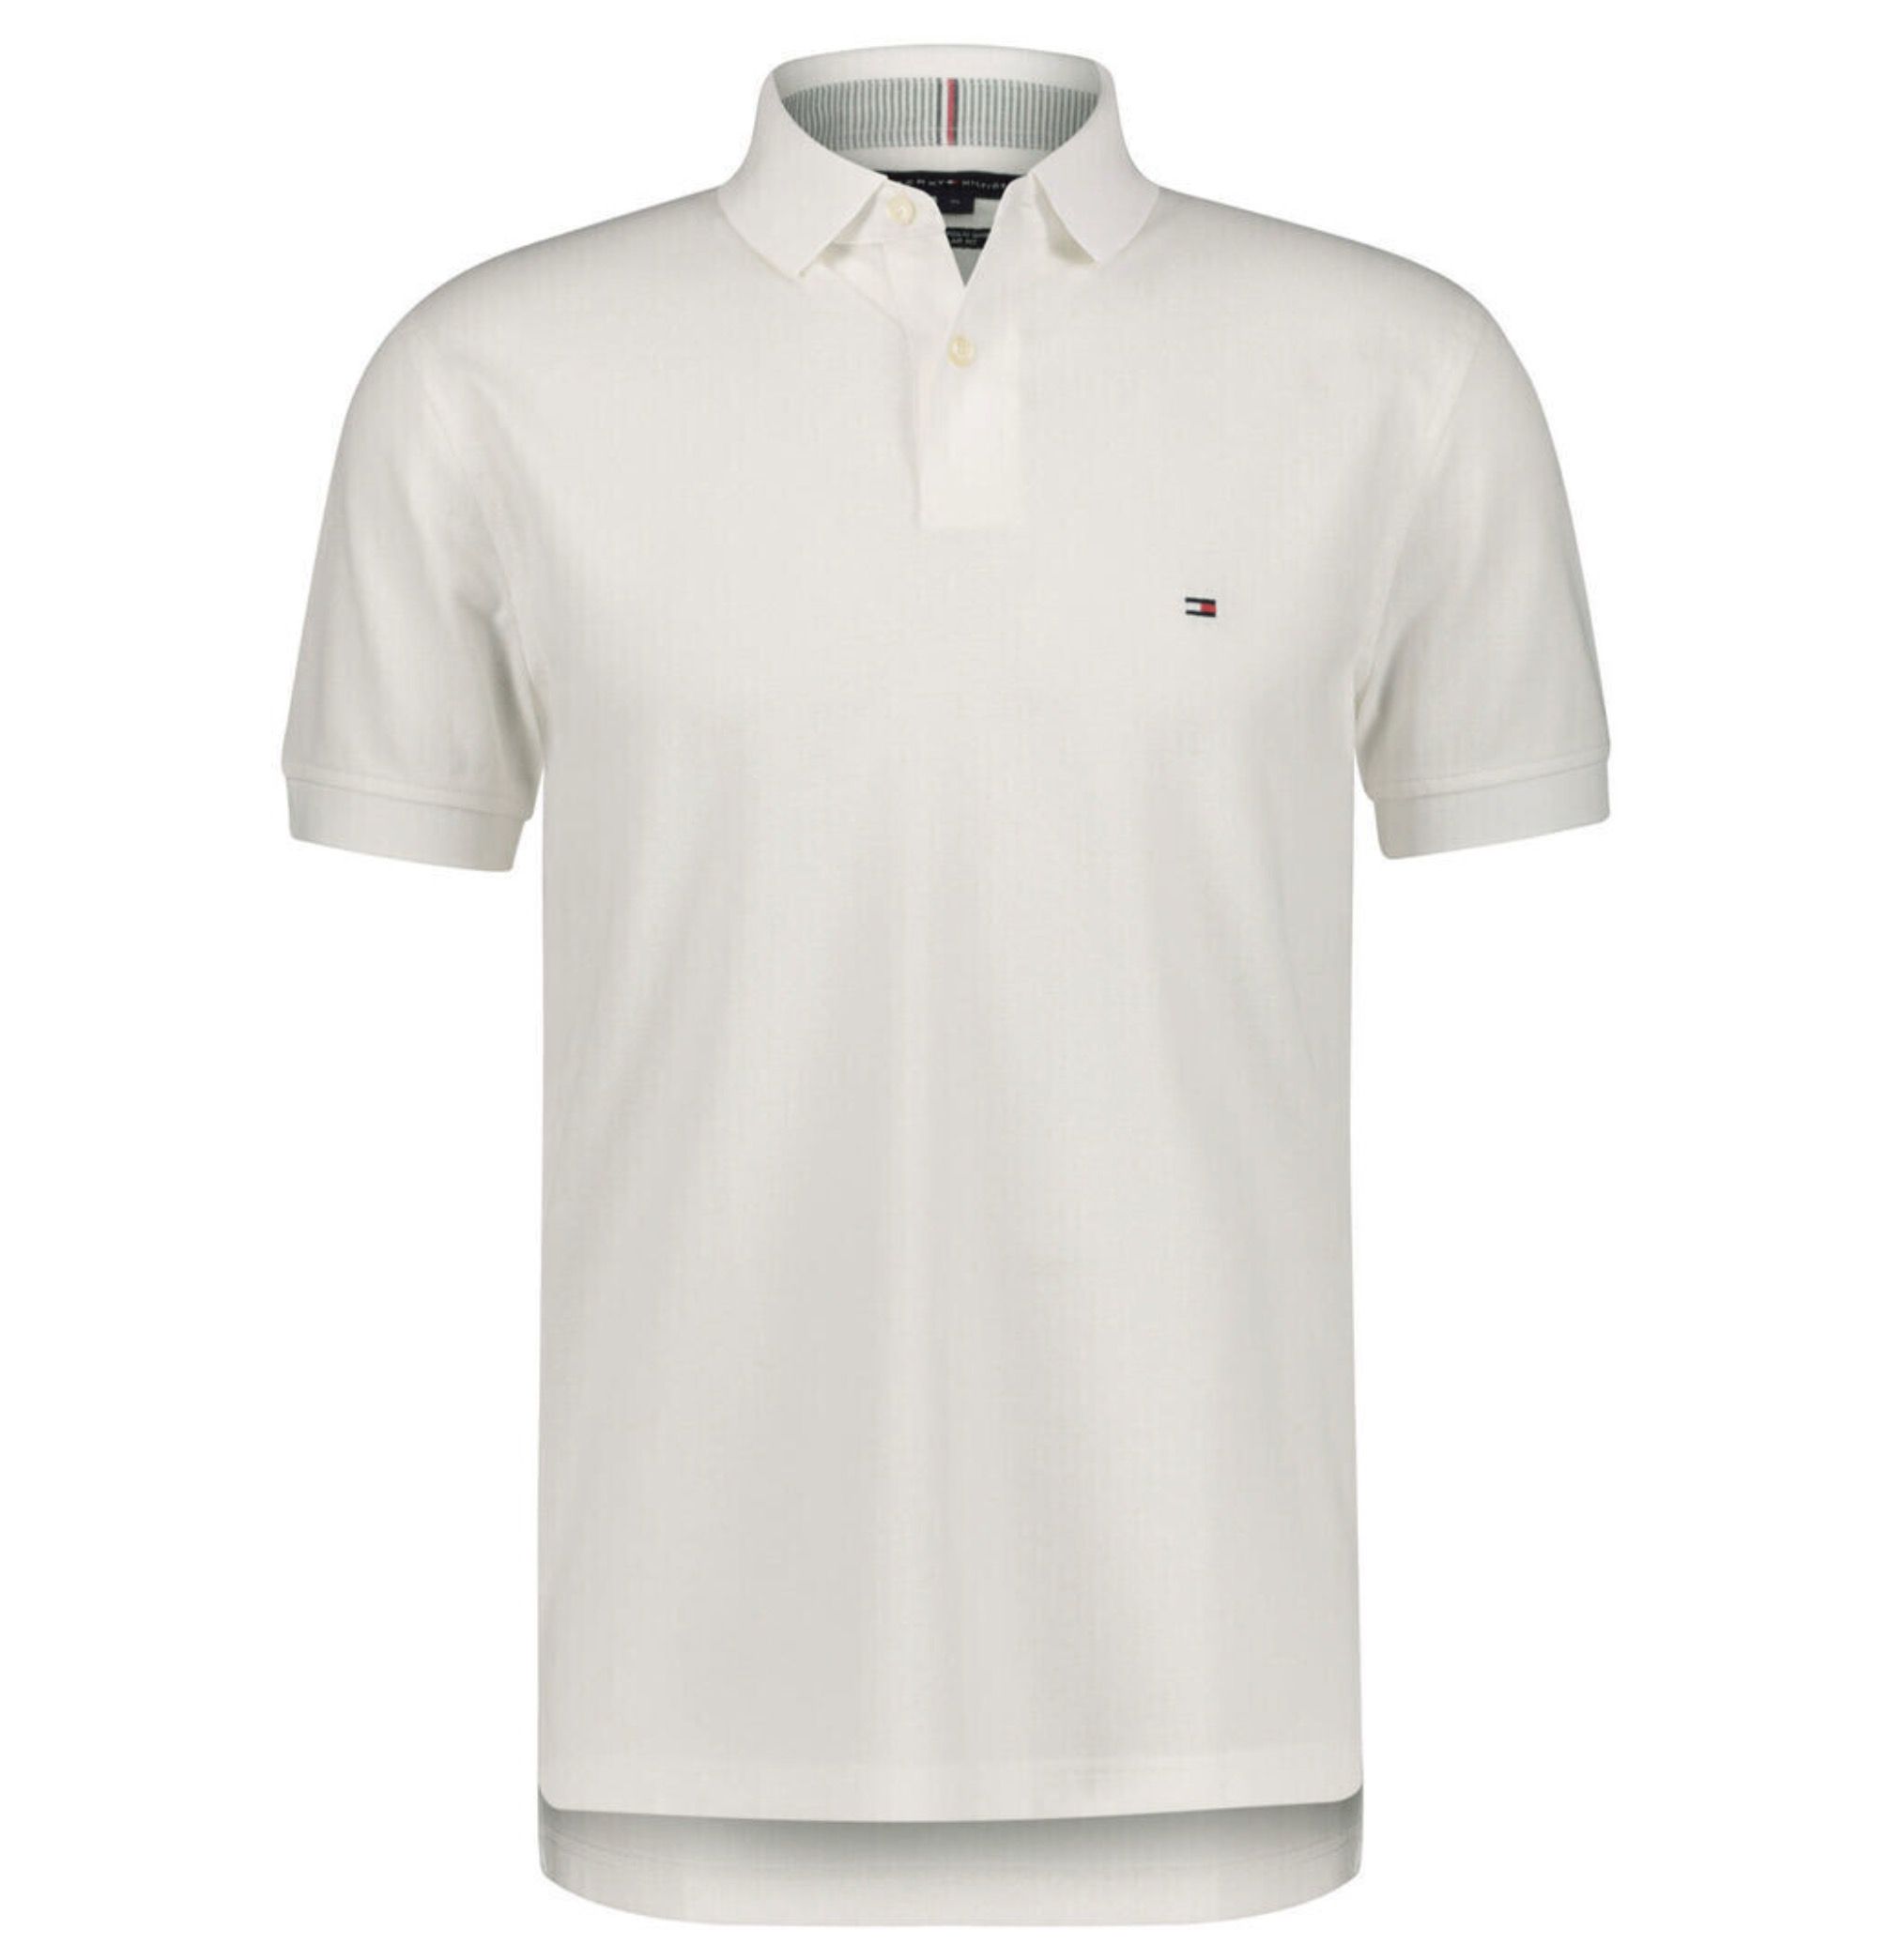 Tommy Hilfiger 1985 Regular Fit Poloshirt in Weiß für 31,99€ (statt 55€)